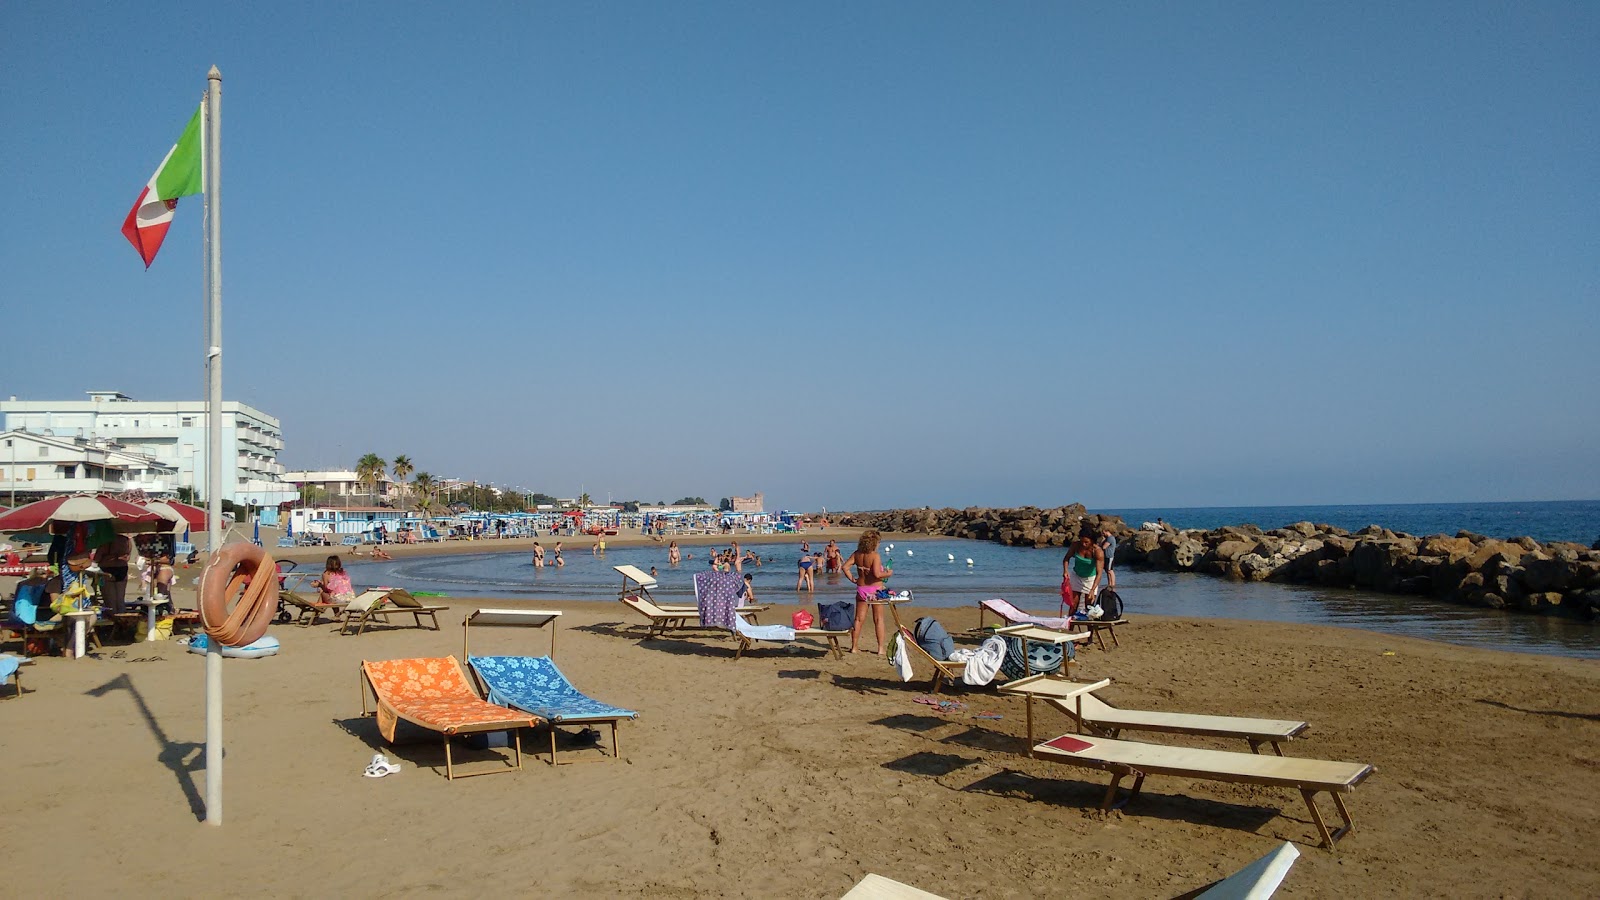 Fotografie cu Plaja Santa Severa cu o suprafață de nisip maro